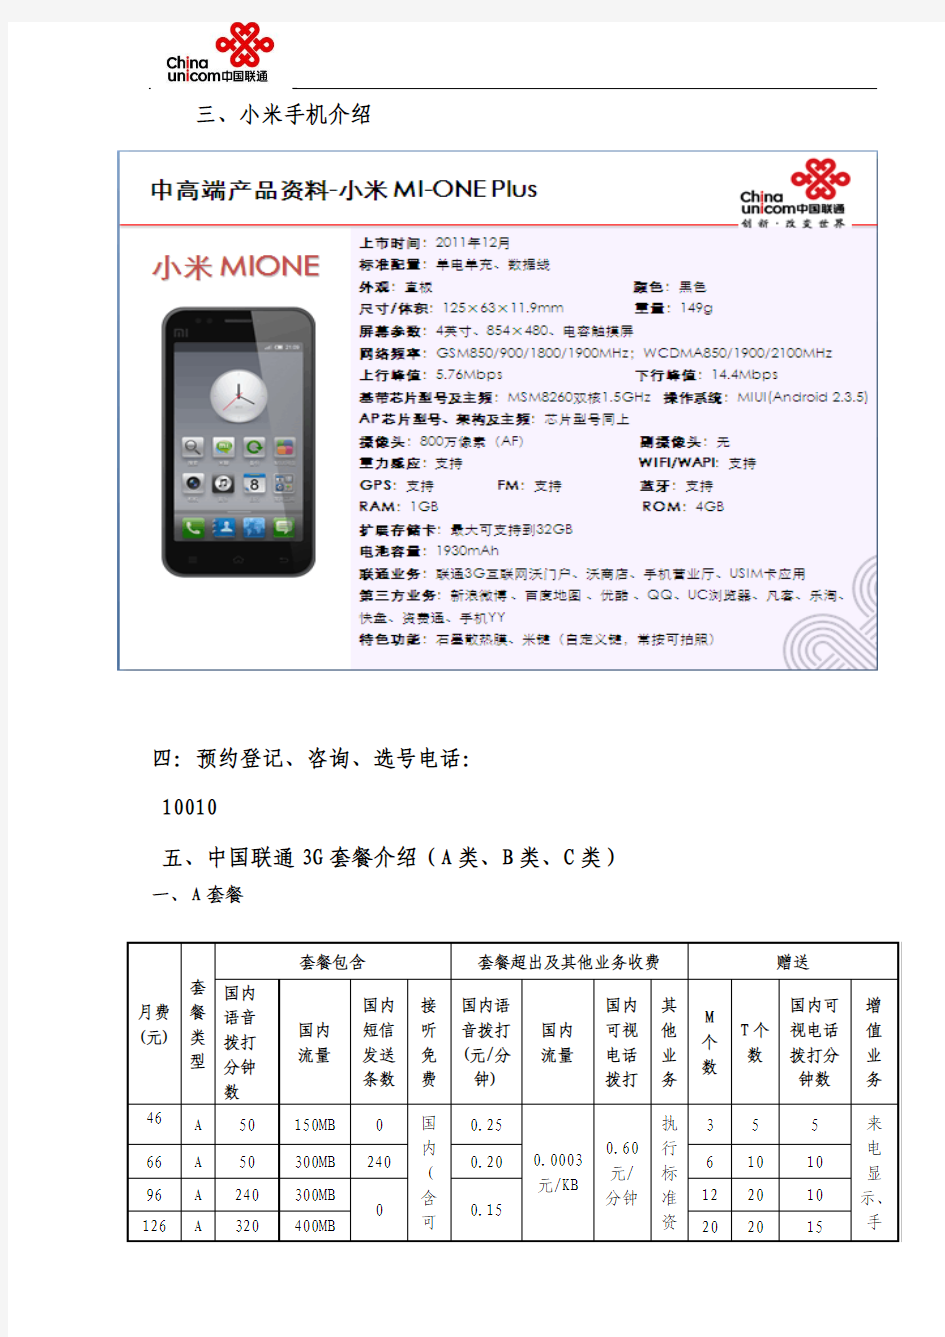 中国联通2012年小米内部手机合约